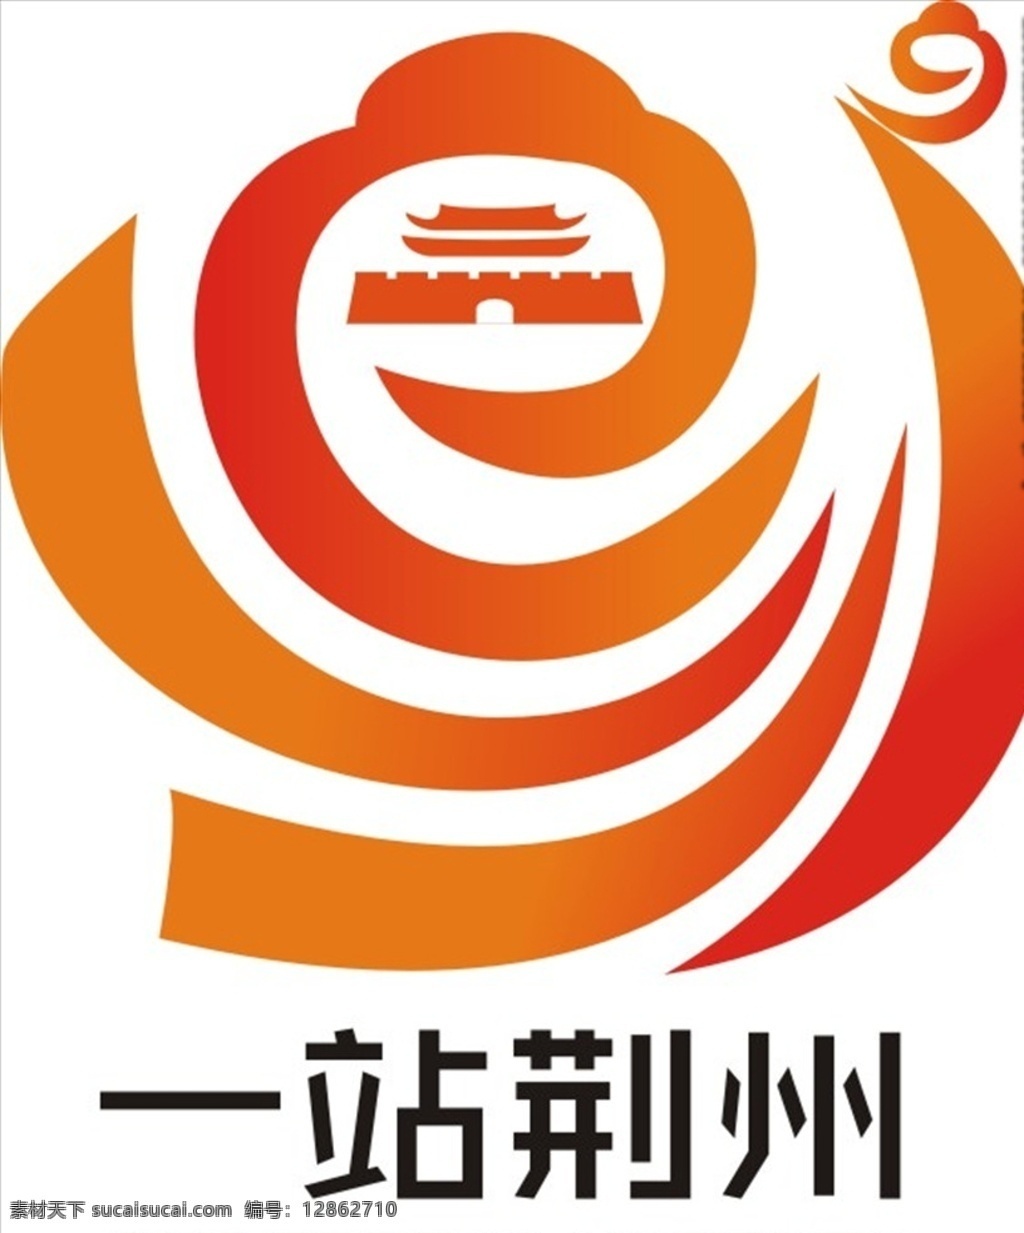 站 荆州 logo 一站荆州 标志 标识 小程序 标志图标 企业